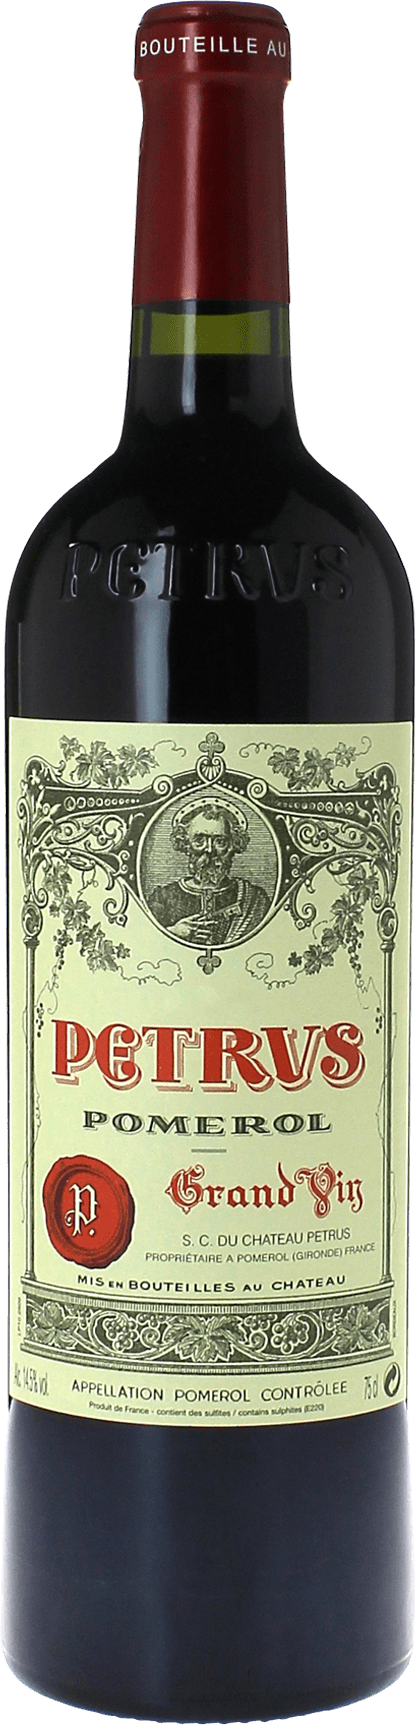 Petrus 1998  Pomerol, Bordeaux rouge